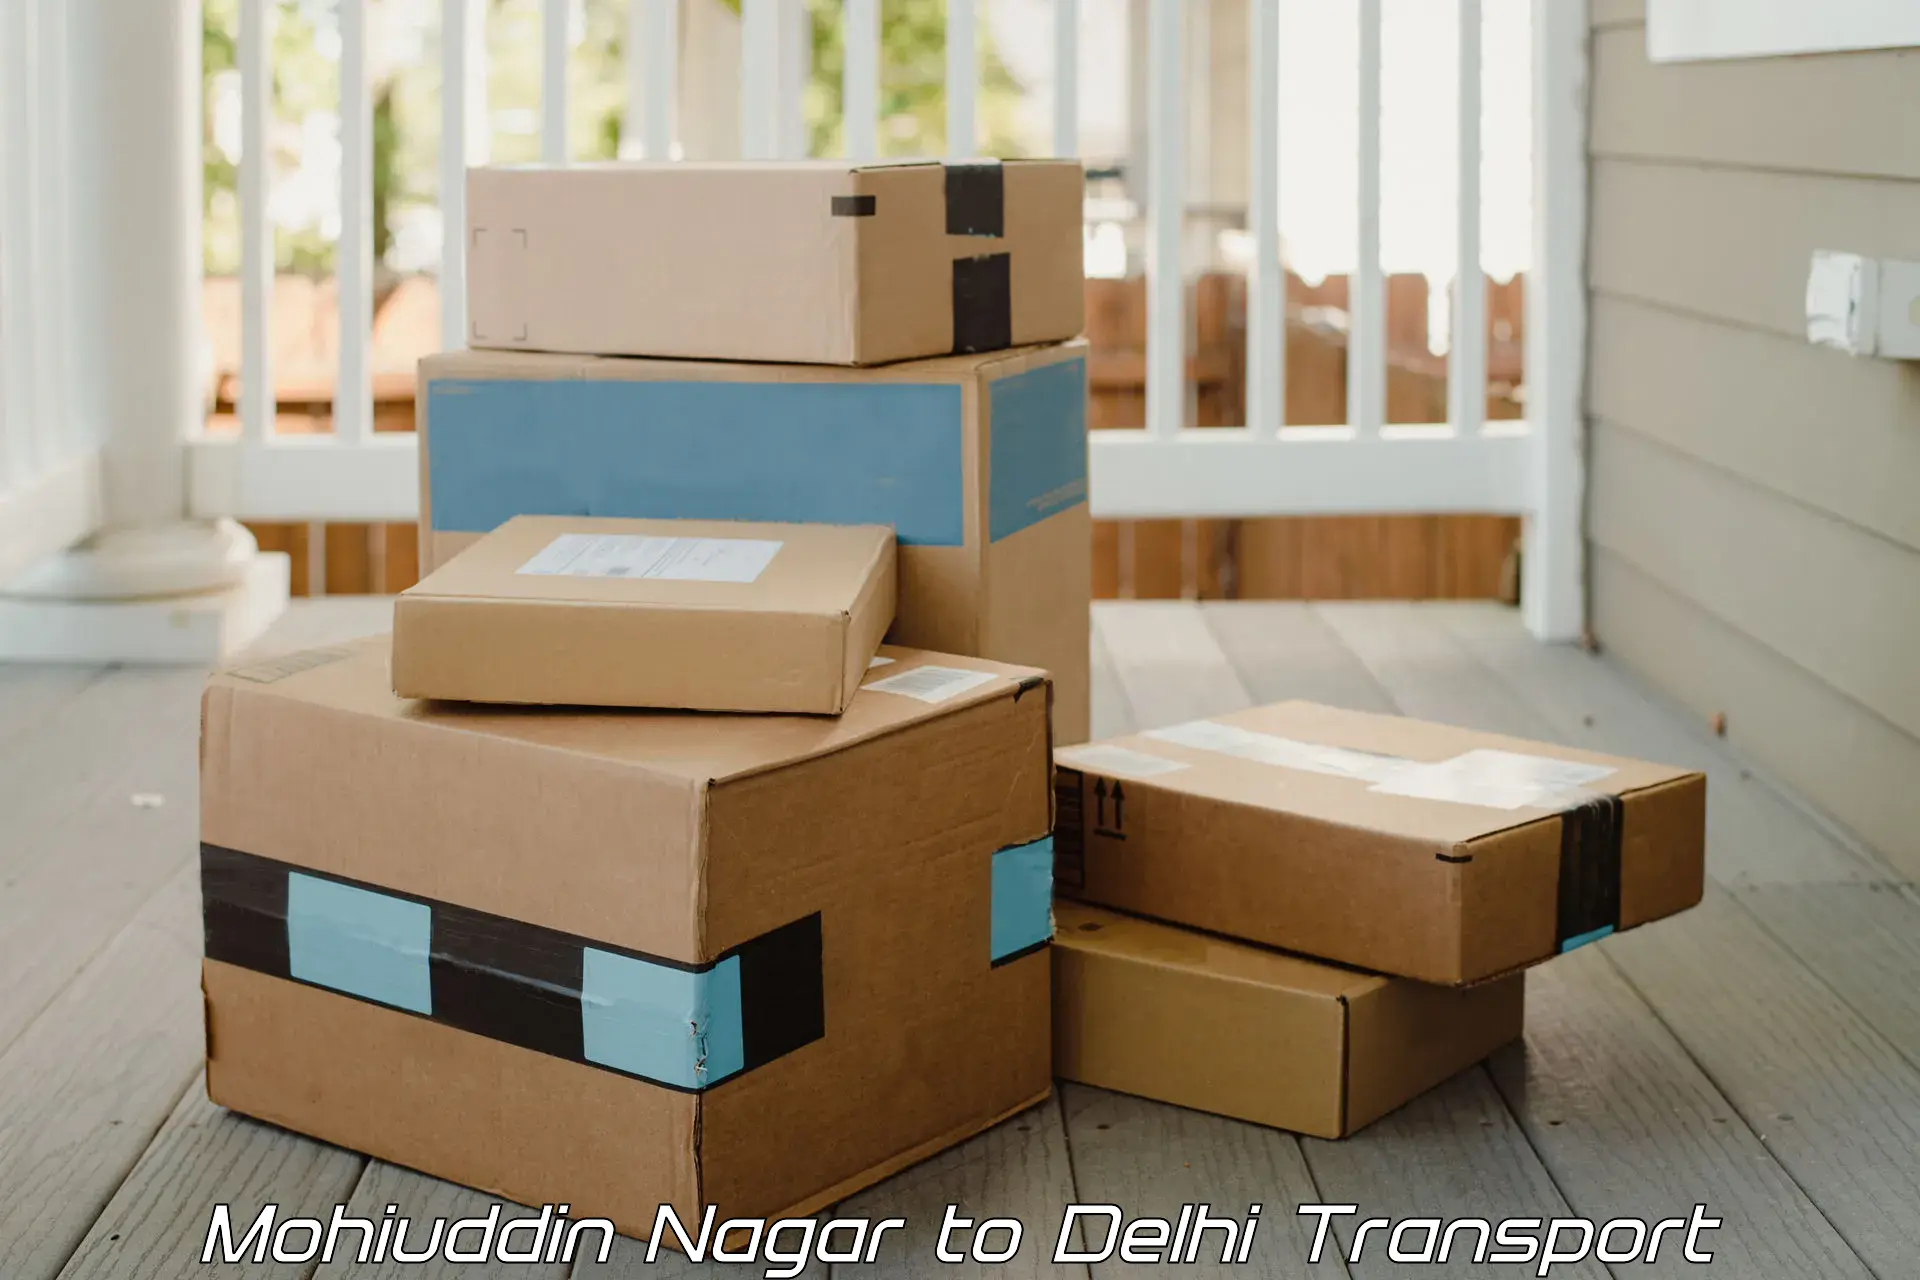 Truck transport companies in India Mohiuddin Nagar to Sarojini Nagar